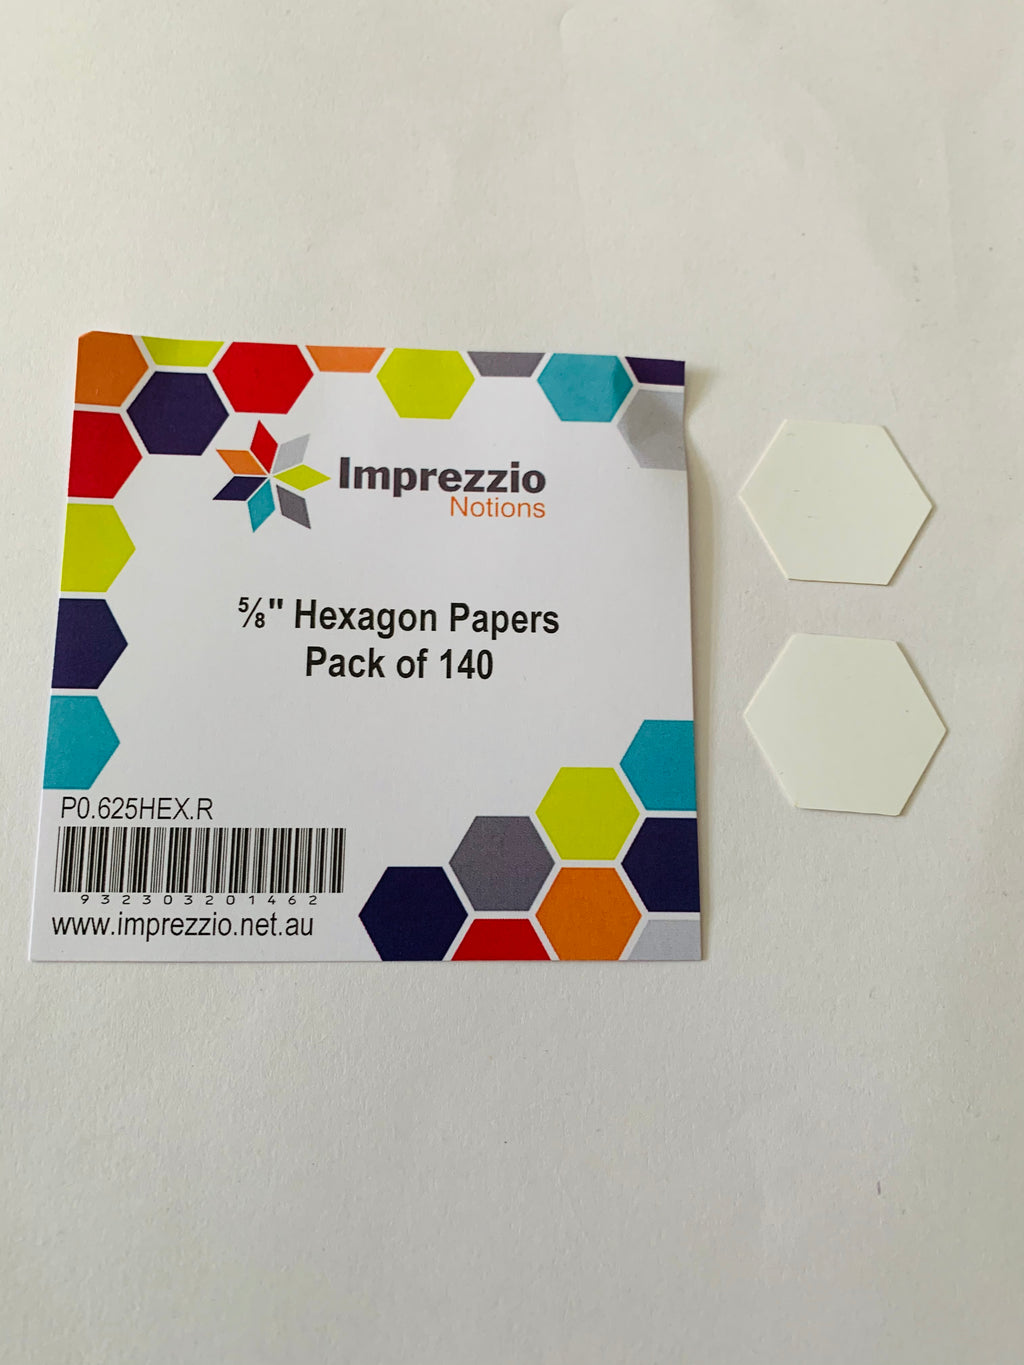 Imprezzio 5/8” hexagon papers